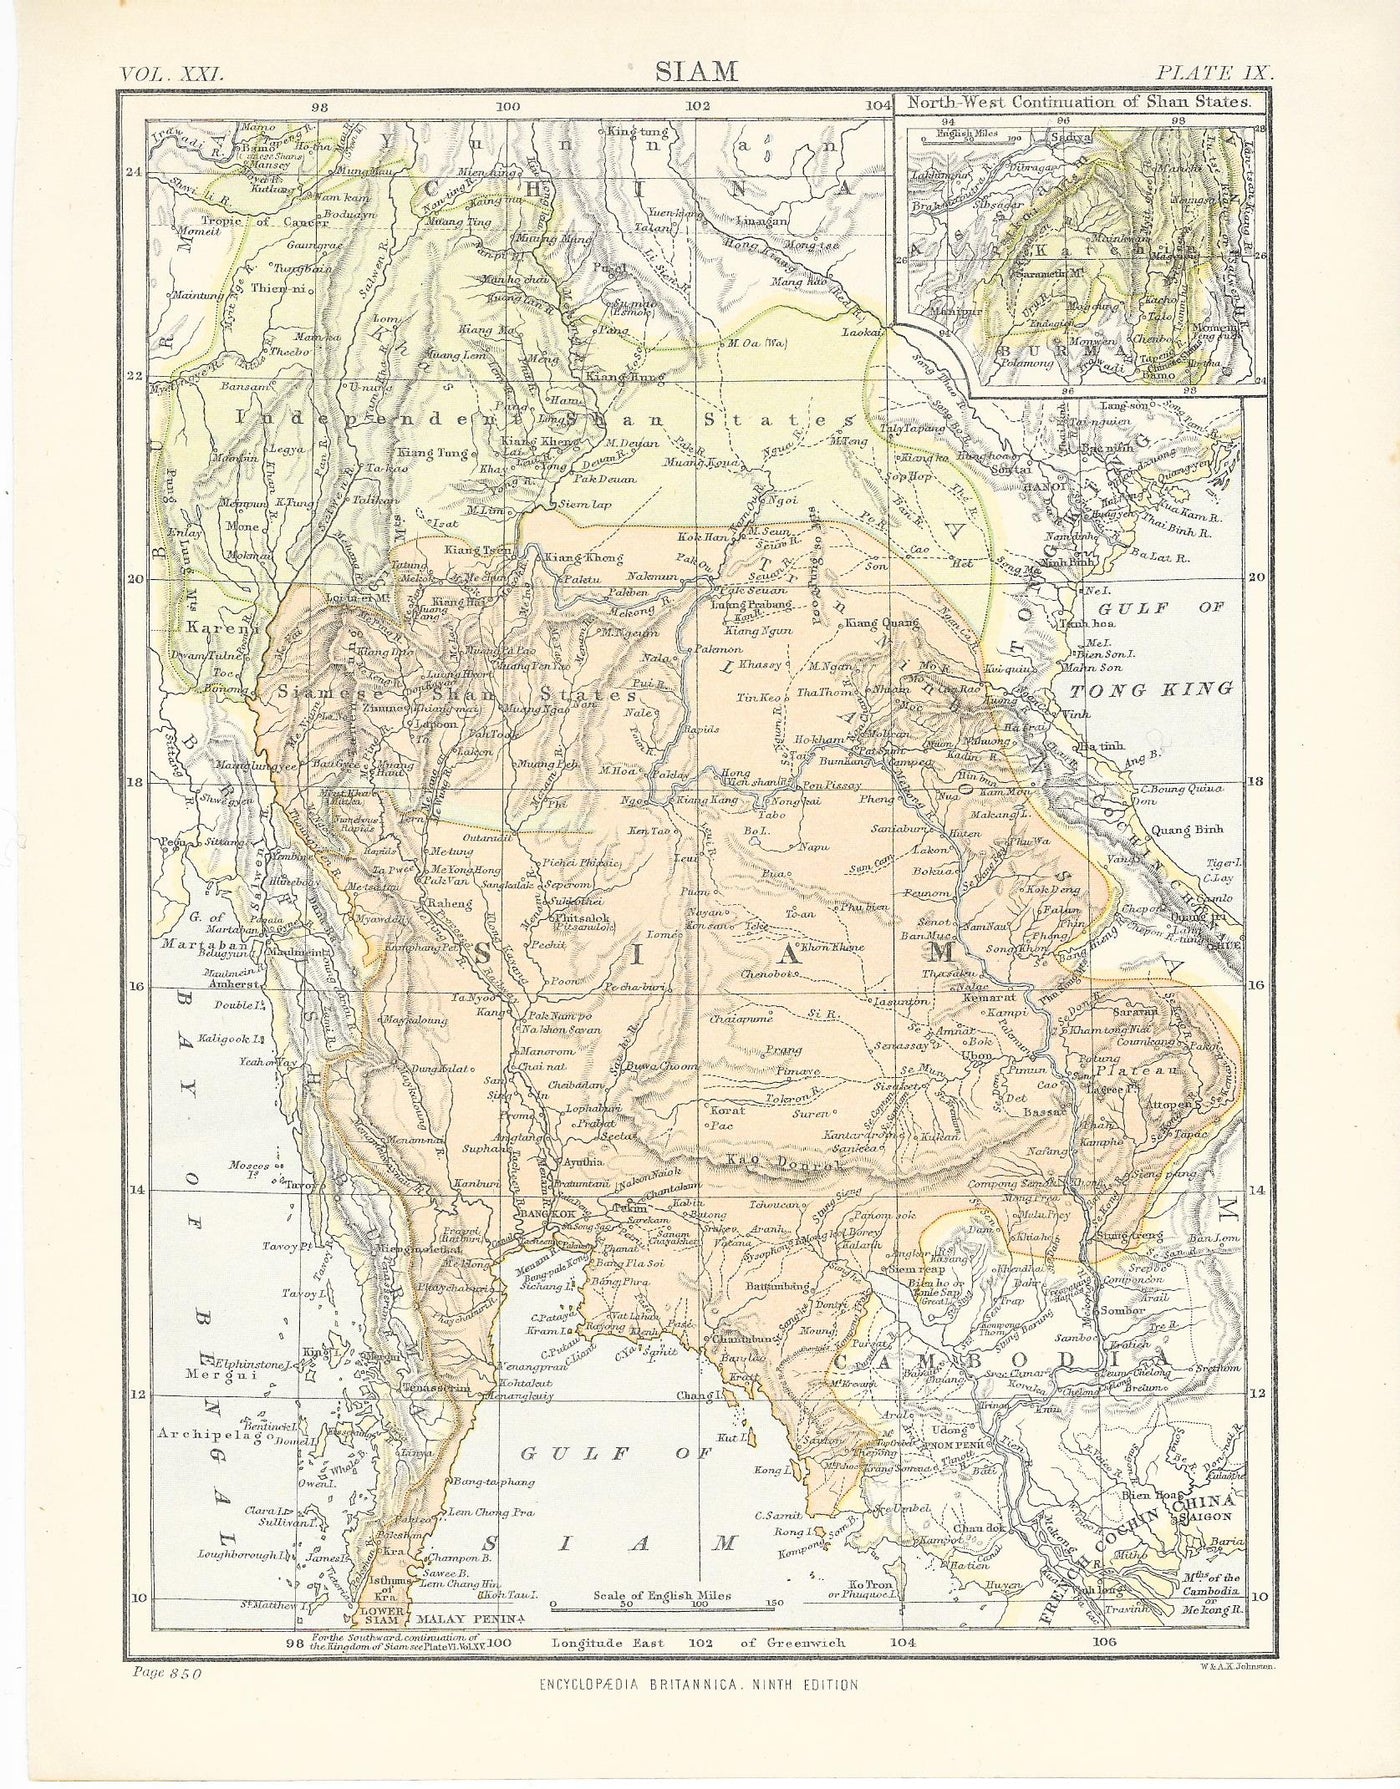 Thailand Maps